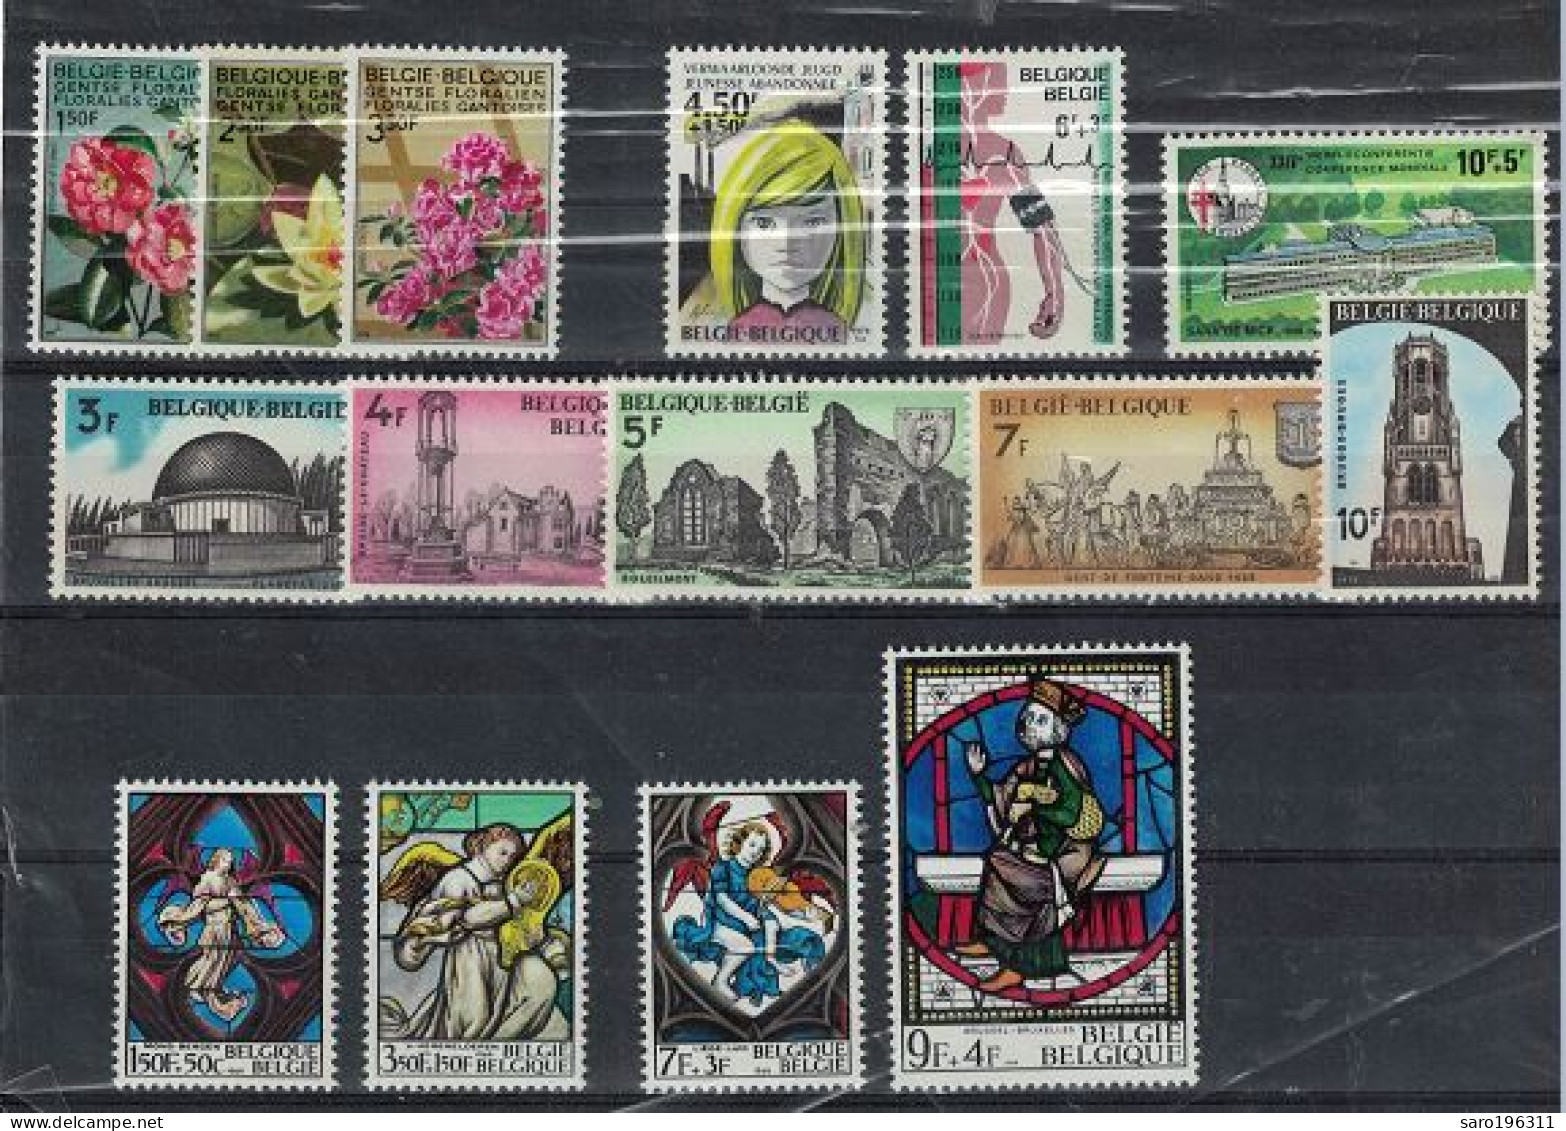 LIQUIDATION  SOUS La FACIALE ** / MNH En SERIES COMPLETES   LOT 4  à  0,89 Euro - Unused Stamps